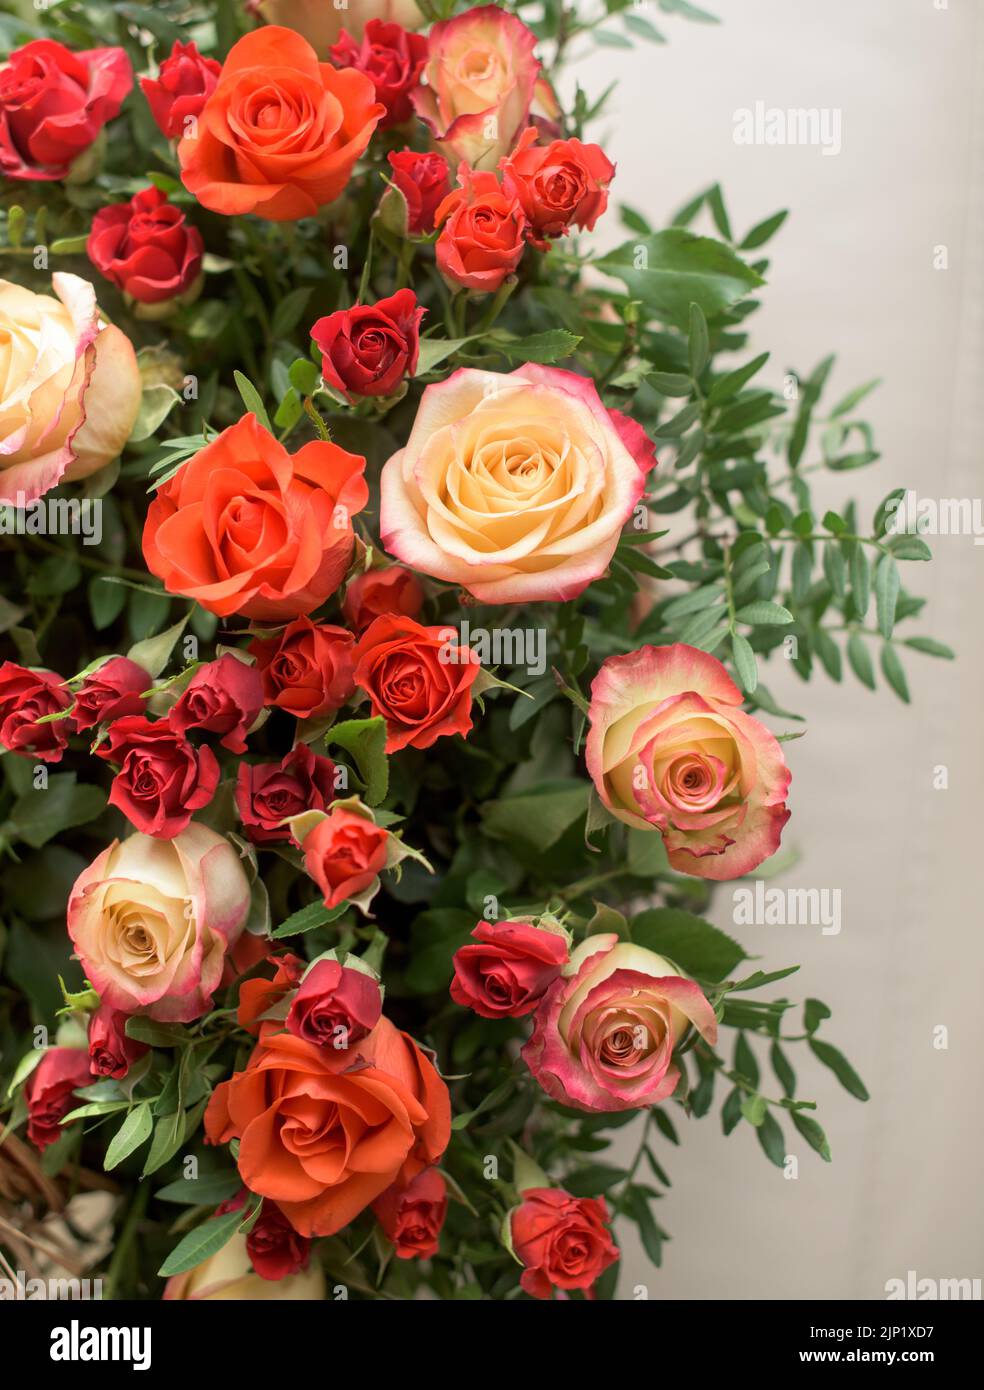 Bouquet aus roten, orangen, gelben Rosen - eine Komposition aus bunten Rosen. Hintergrund für eine Postkarte. Stockfoto